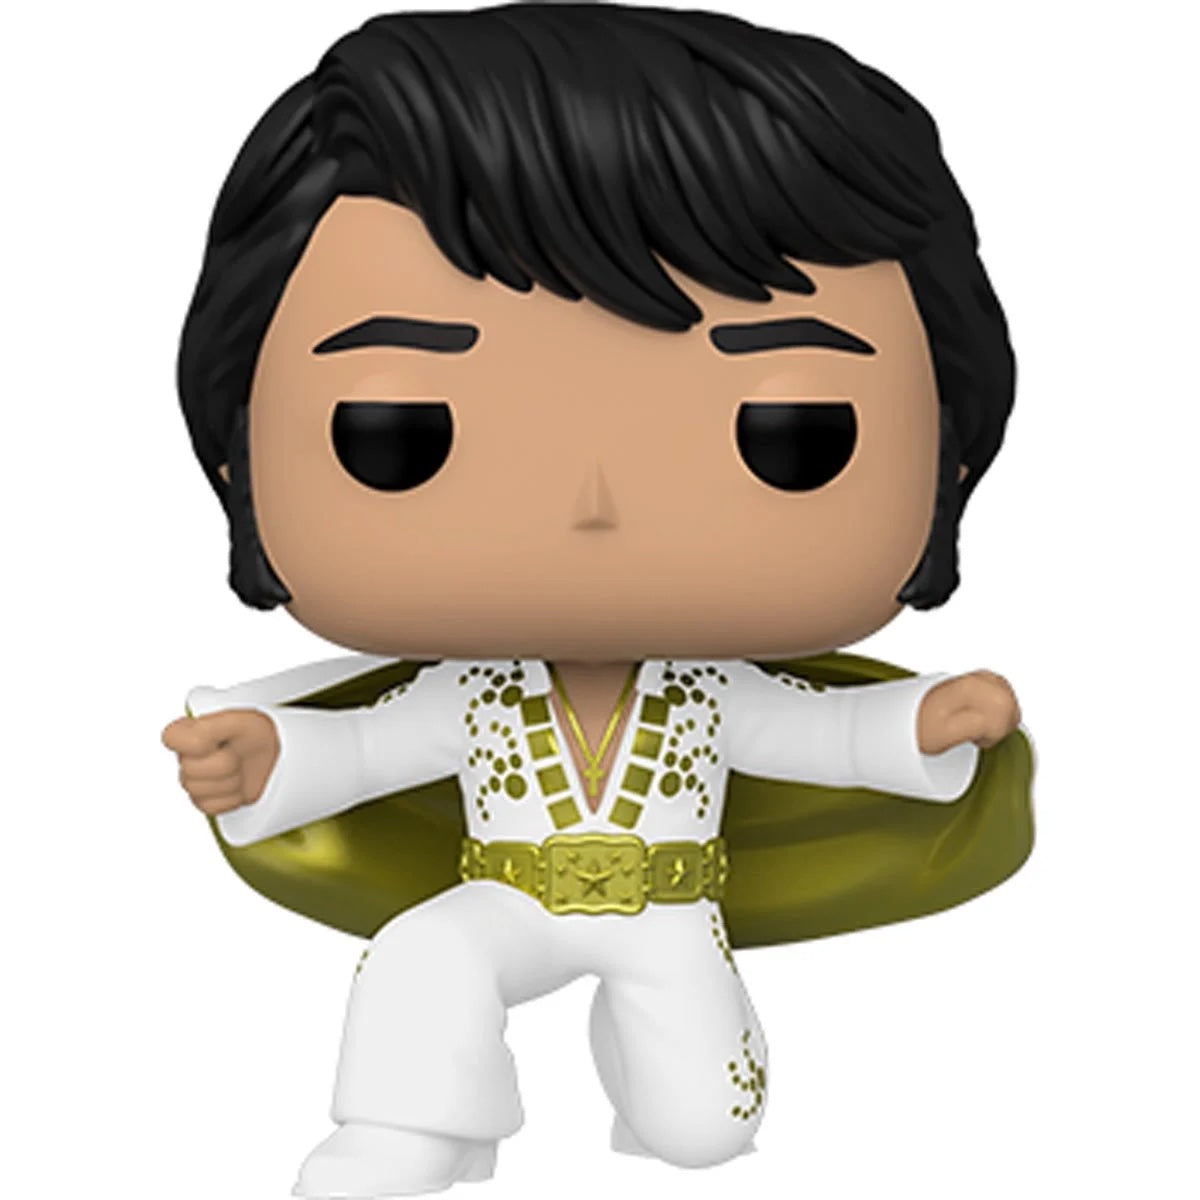 Funko Pop! Rocks: Elvis Presley - Pharaoh suit